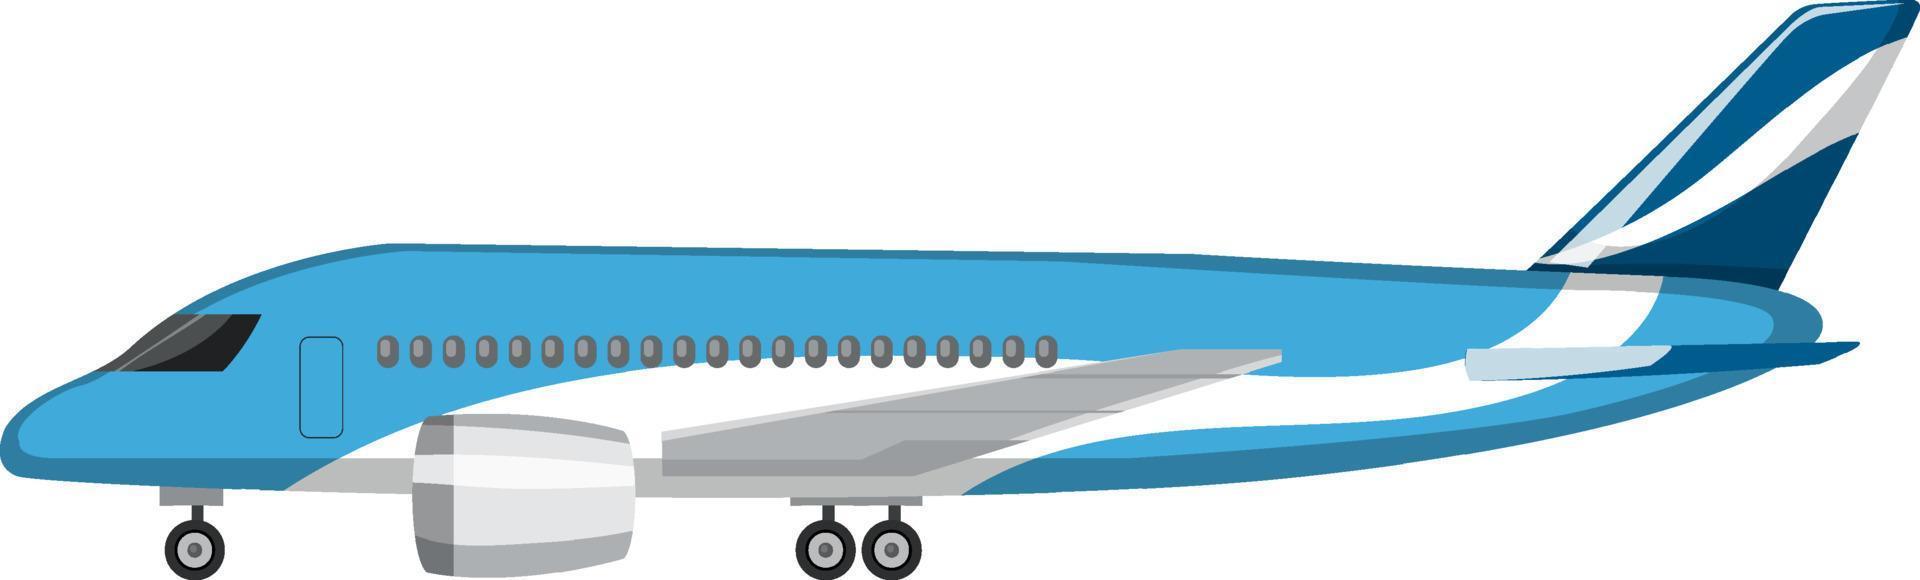 avión en estilo de dibujos animados sobre fondo blanco vector